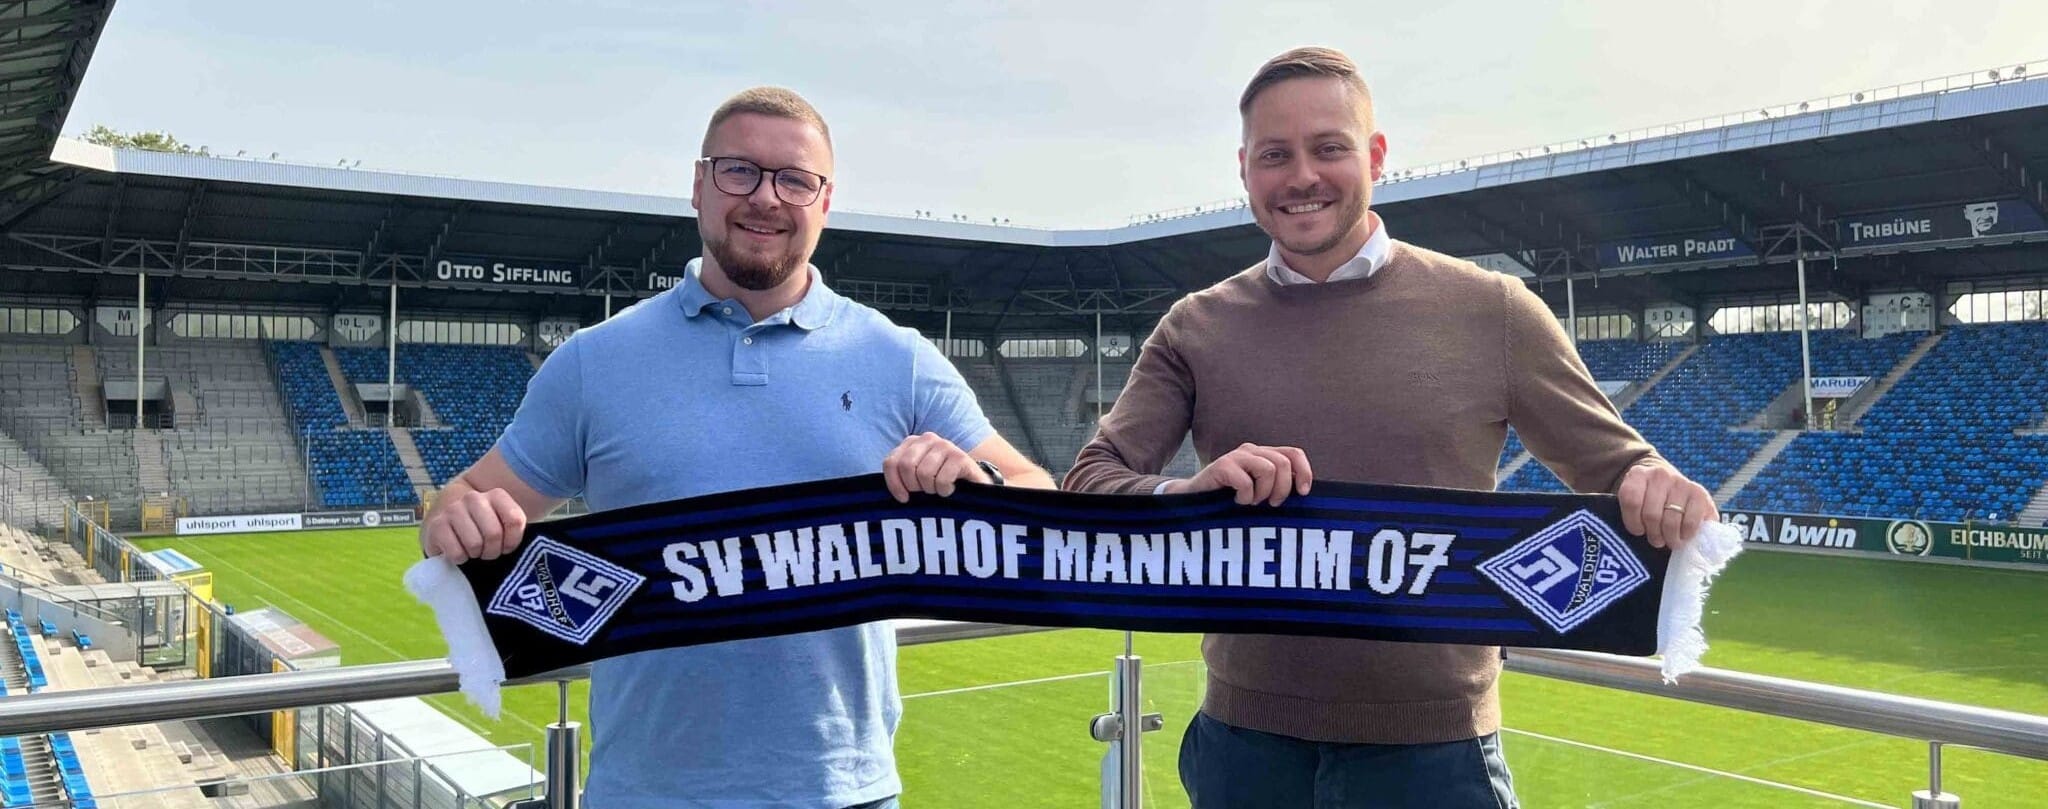 IT-Tradition trifft Fußball-Tradition: Partnerschaft mit dem SV Waldhof Mannheim